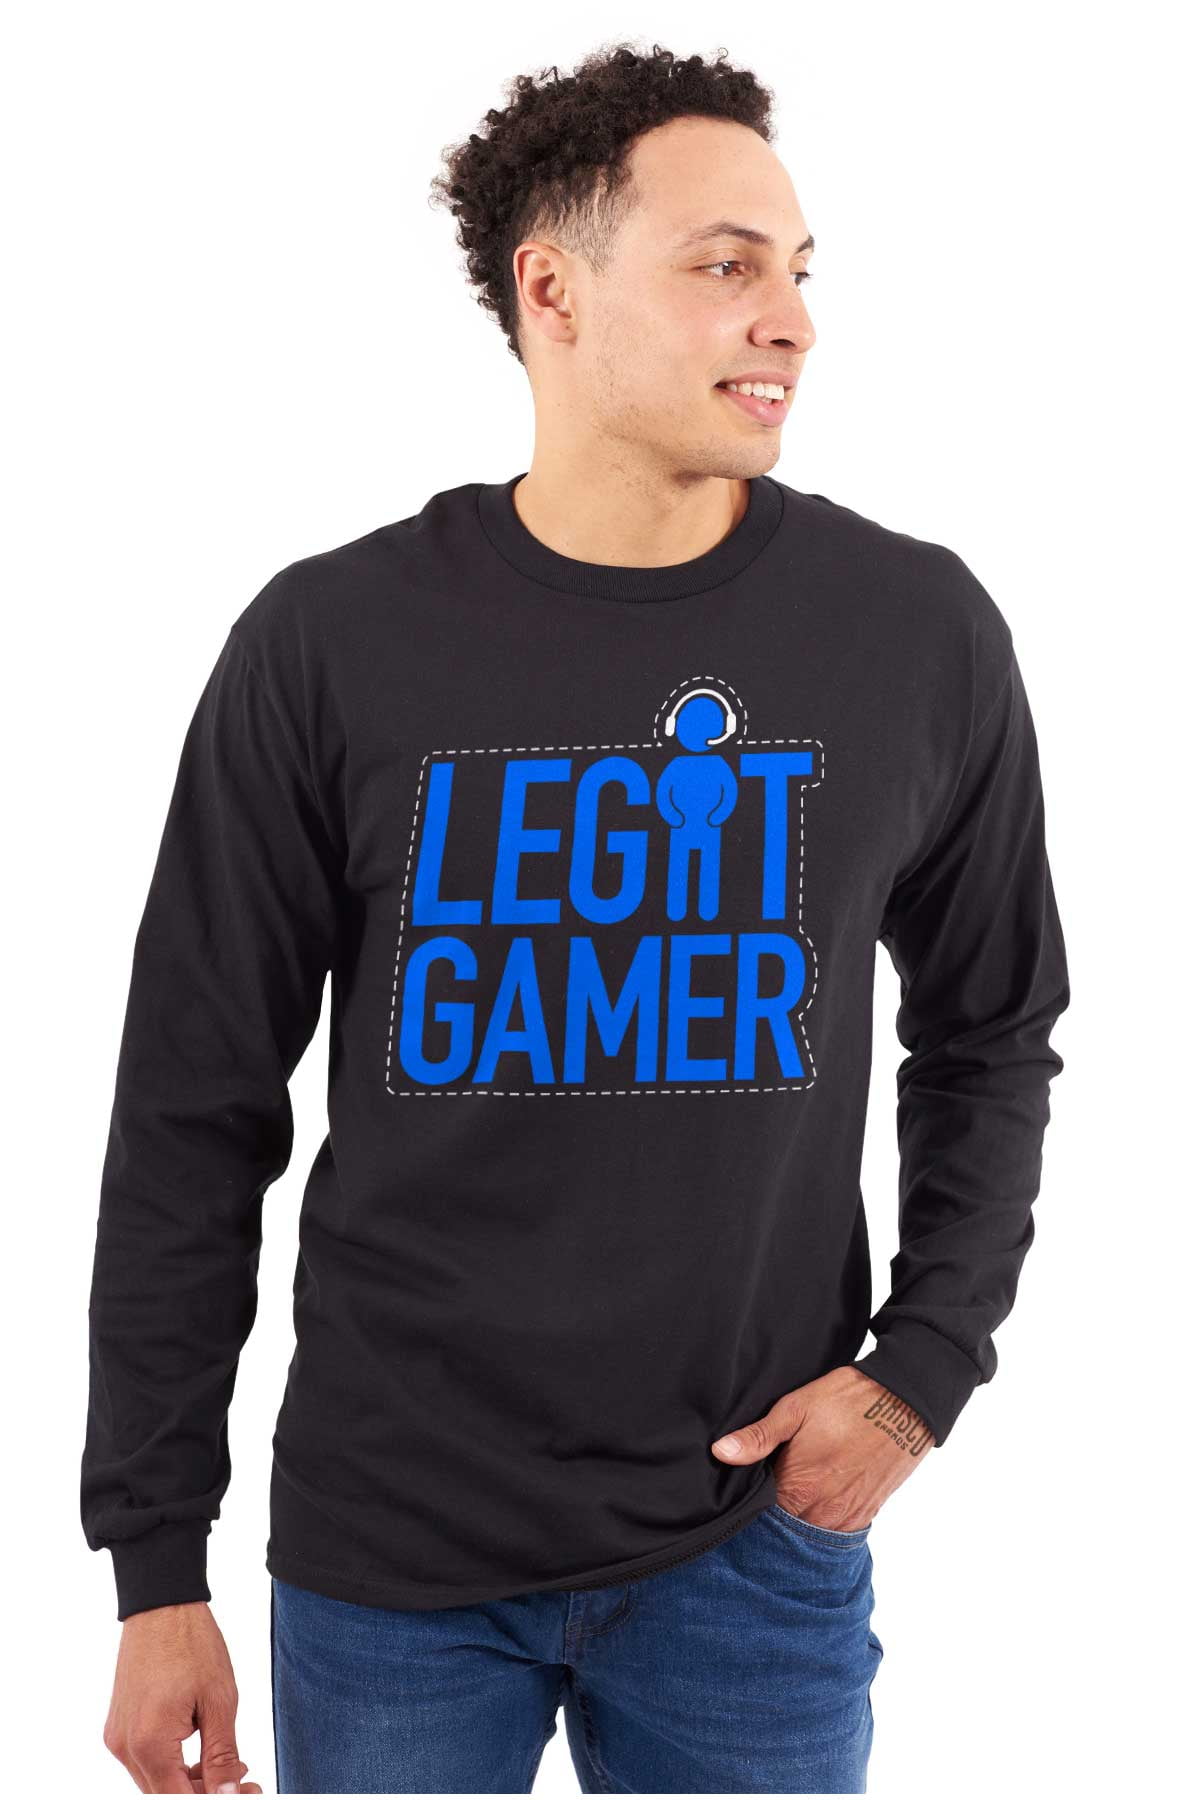 Legit Gamer Video Games Nerdy Geeky Men's Long Sleeve Tee T Shirt Brisco  Brands 3X